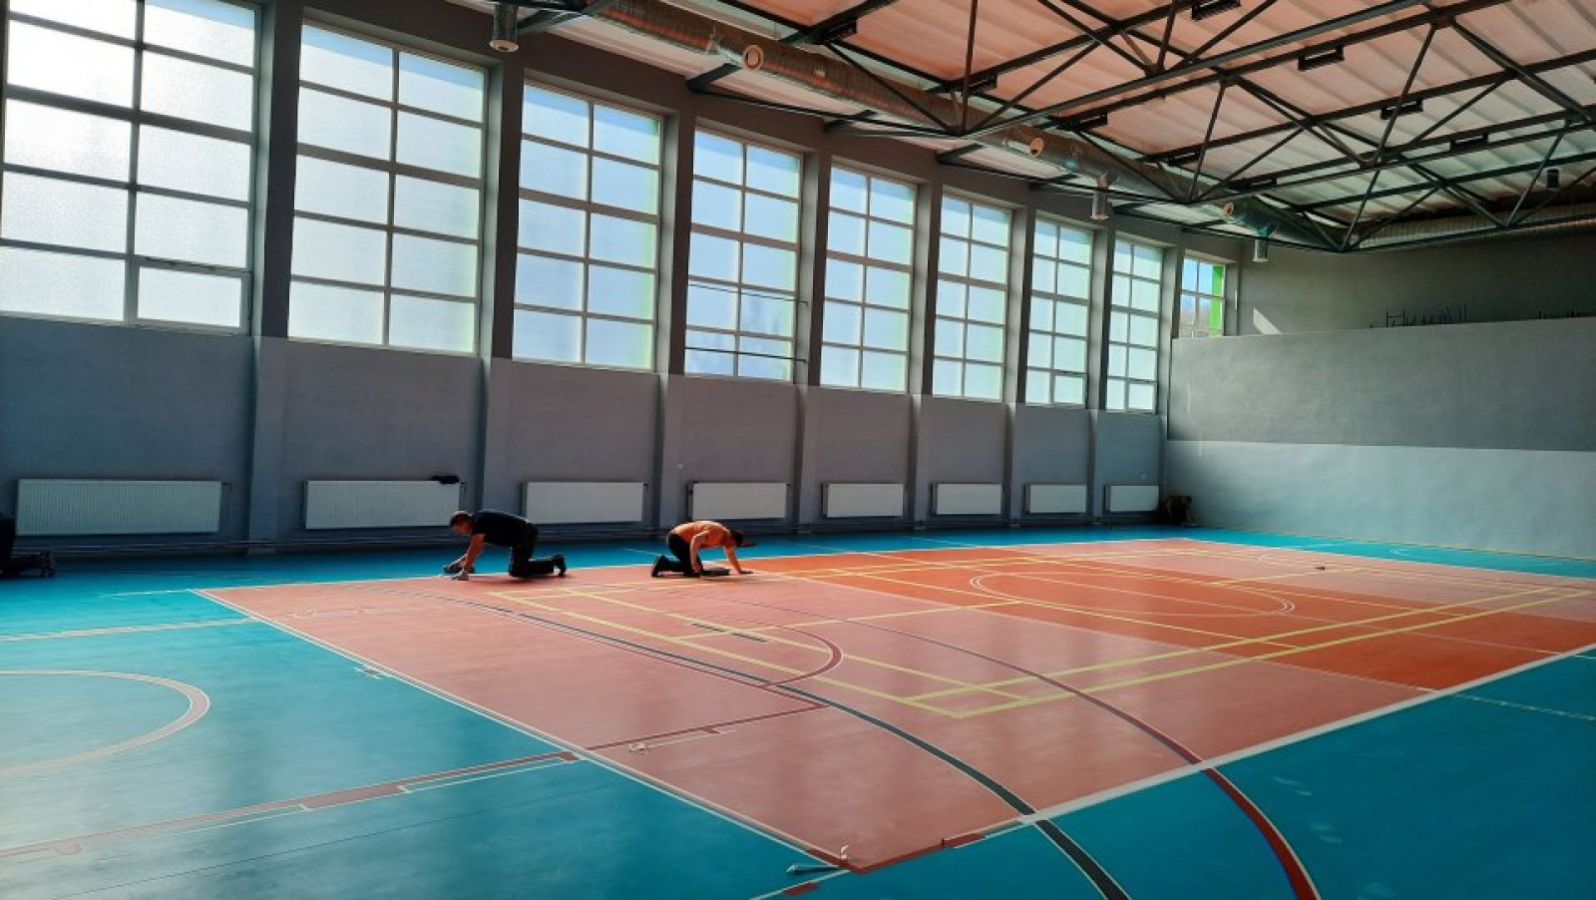 Trwa remont sali gimnastycznej w Zespole Szkół nr 5 w Sanoku